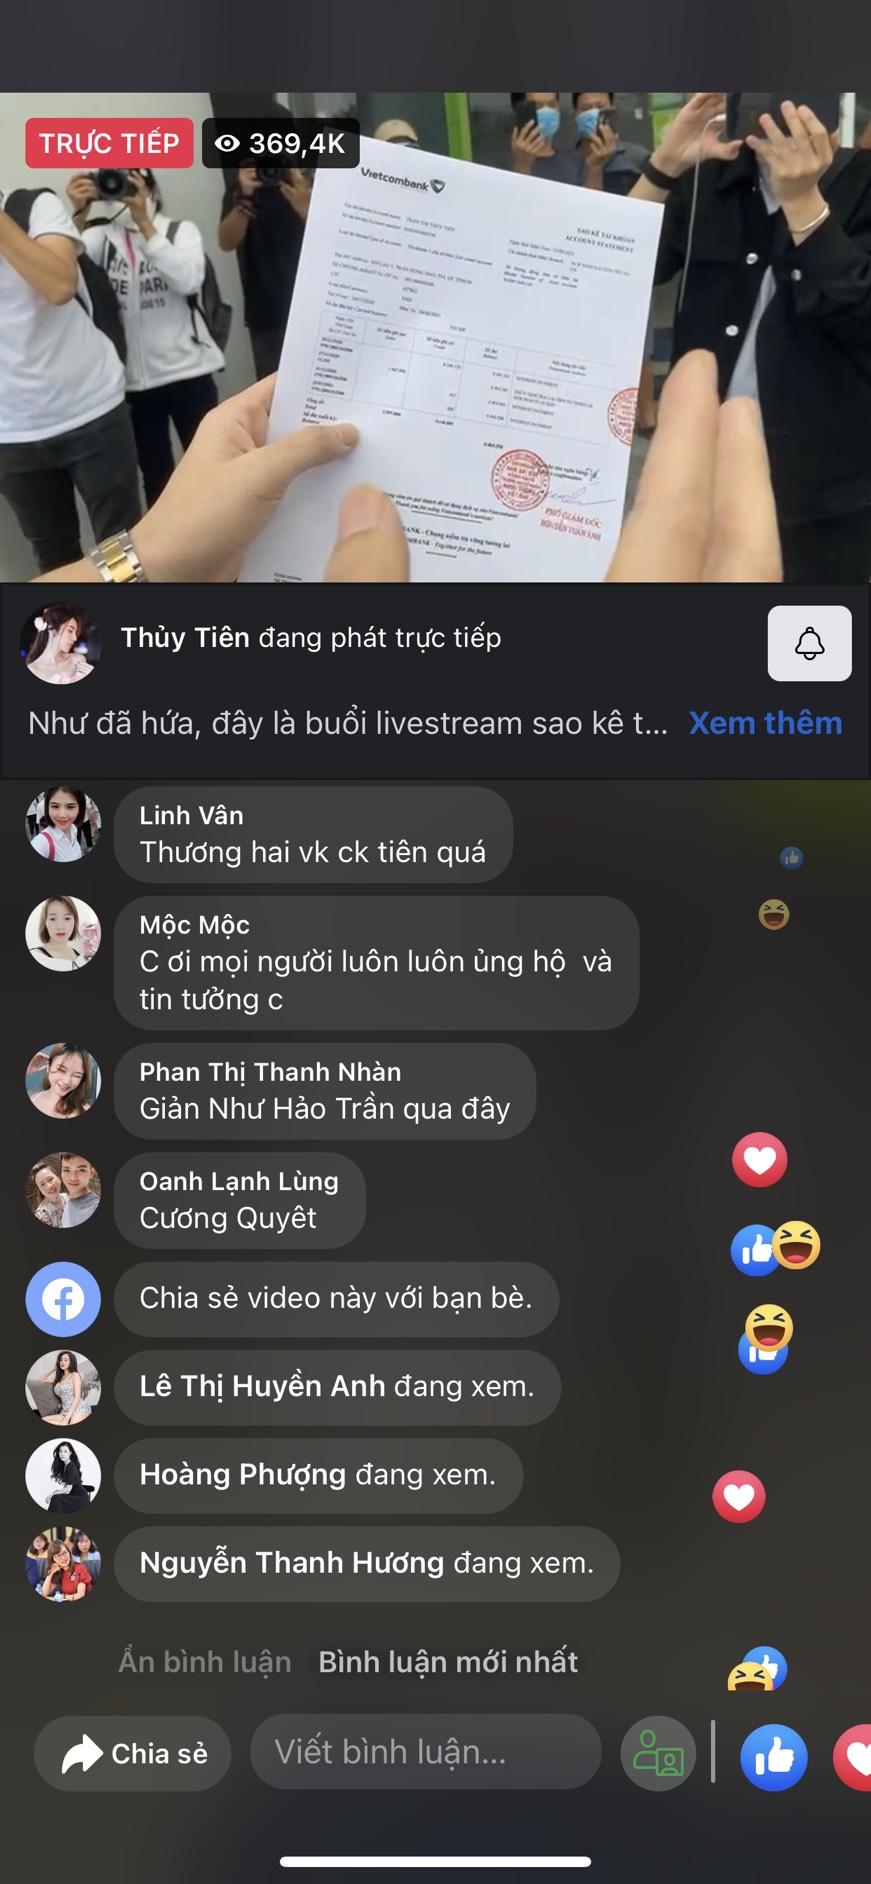 LIVE: Toàn cảnh Thủy Tiên livestream sao kê tại ngân hàng Vietcombank - Ảnh 1